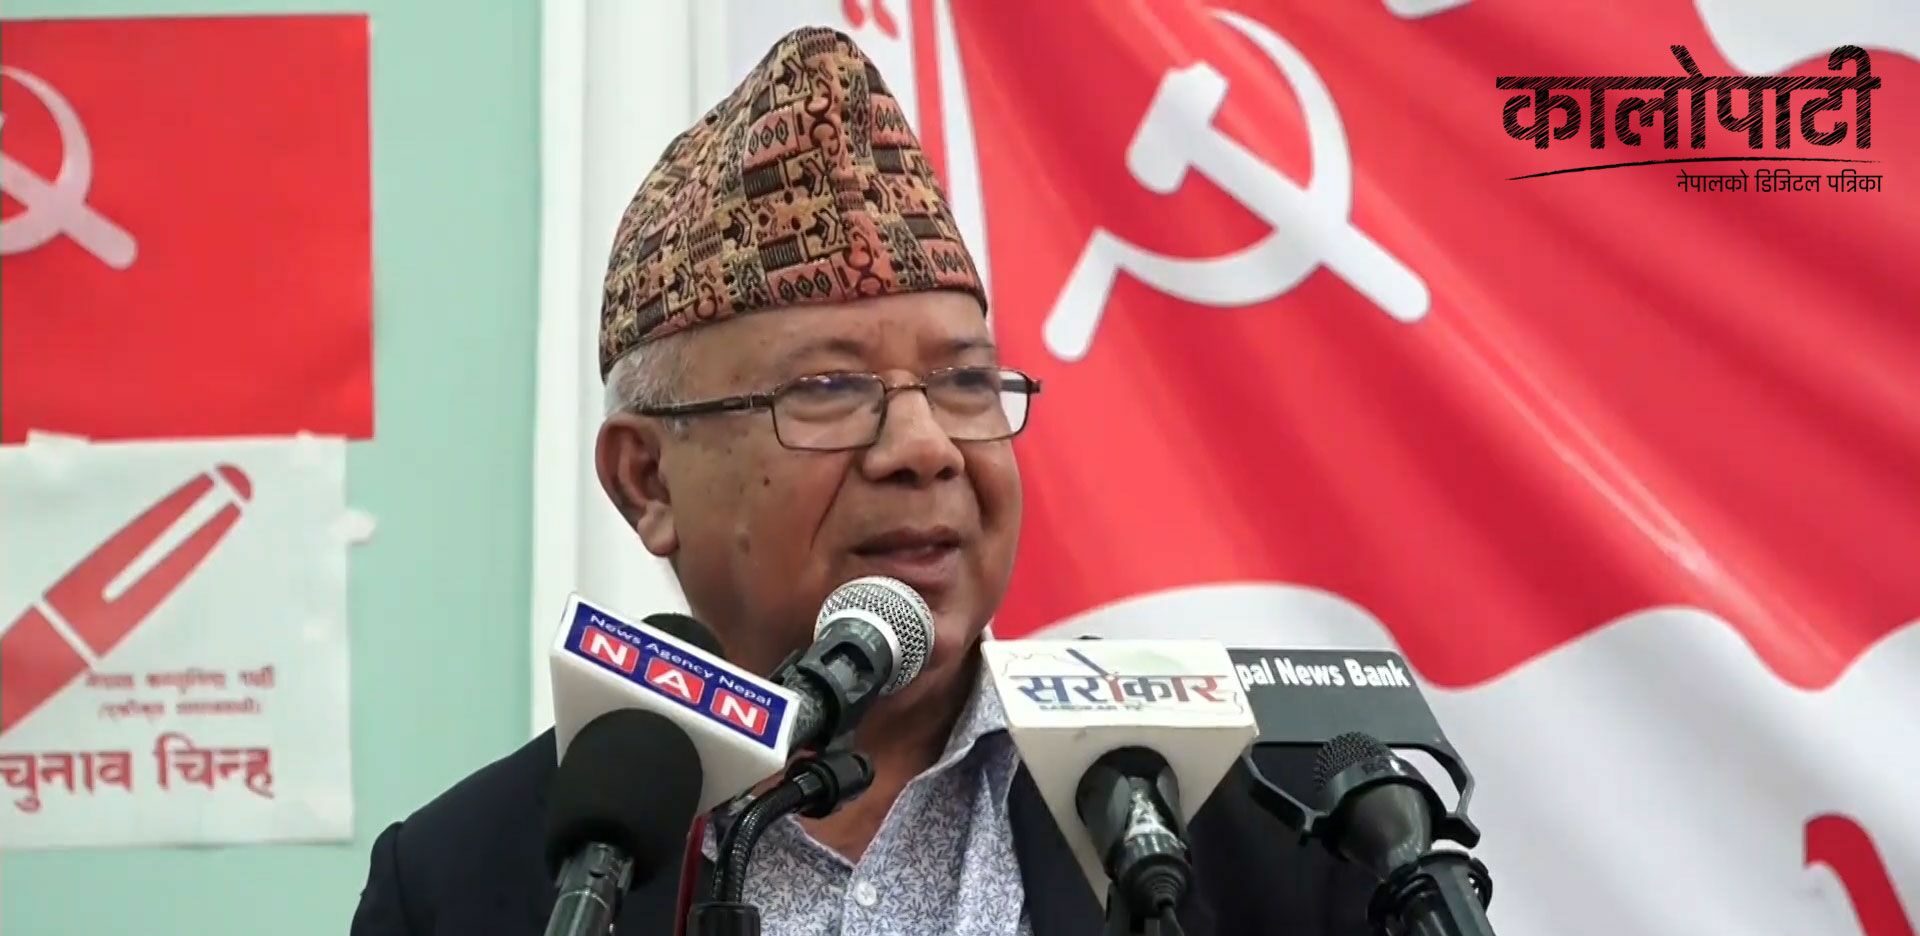 ‘गठबन्धनको पक्षमा माहोल बनेको छ, गठबन्धनले धेरै स्थानमा निर्वाचन पनि जित्छ’ : अध्यक्ष नेपाल